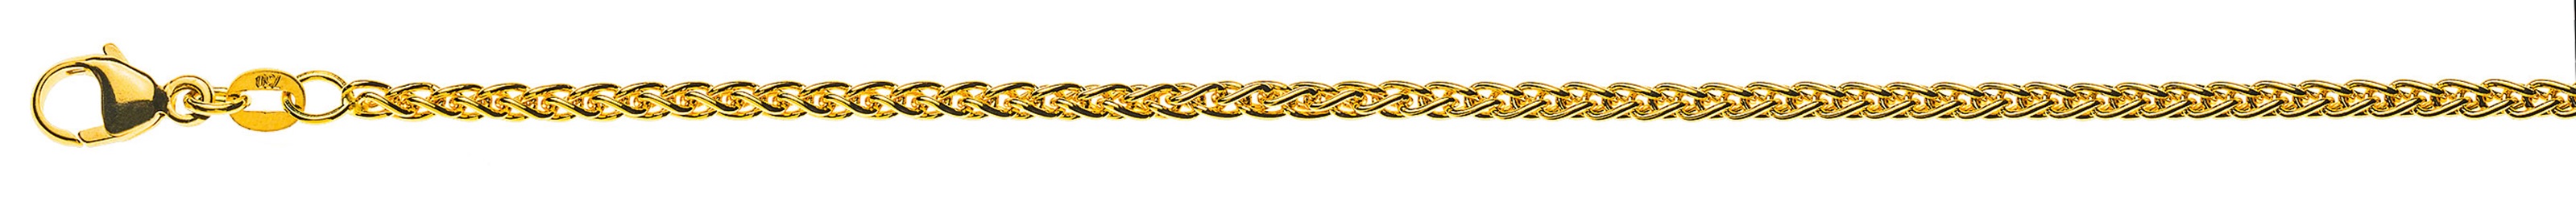 AURONOS Prestige Halskette Gelbgold 18K Zopfkette 42cm 2.5mm